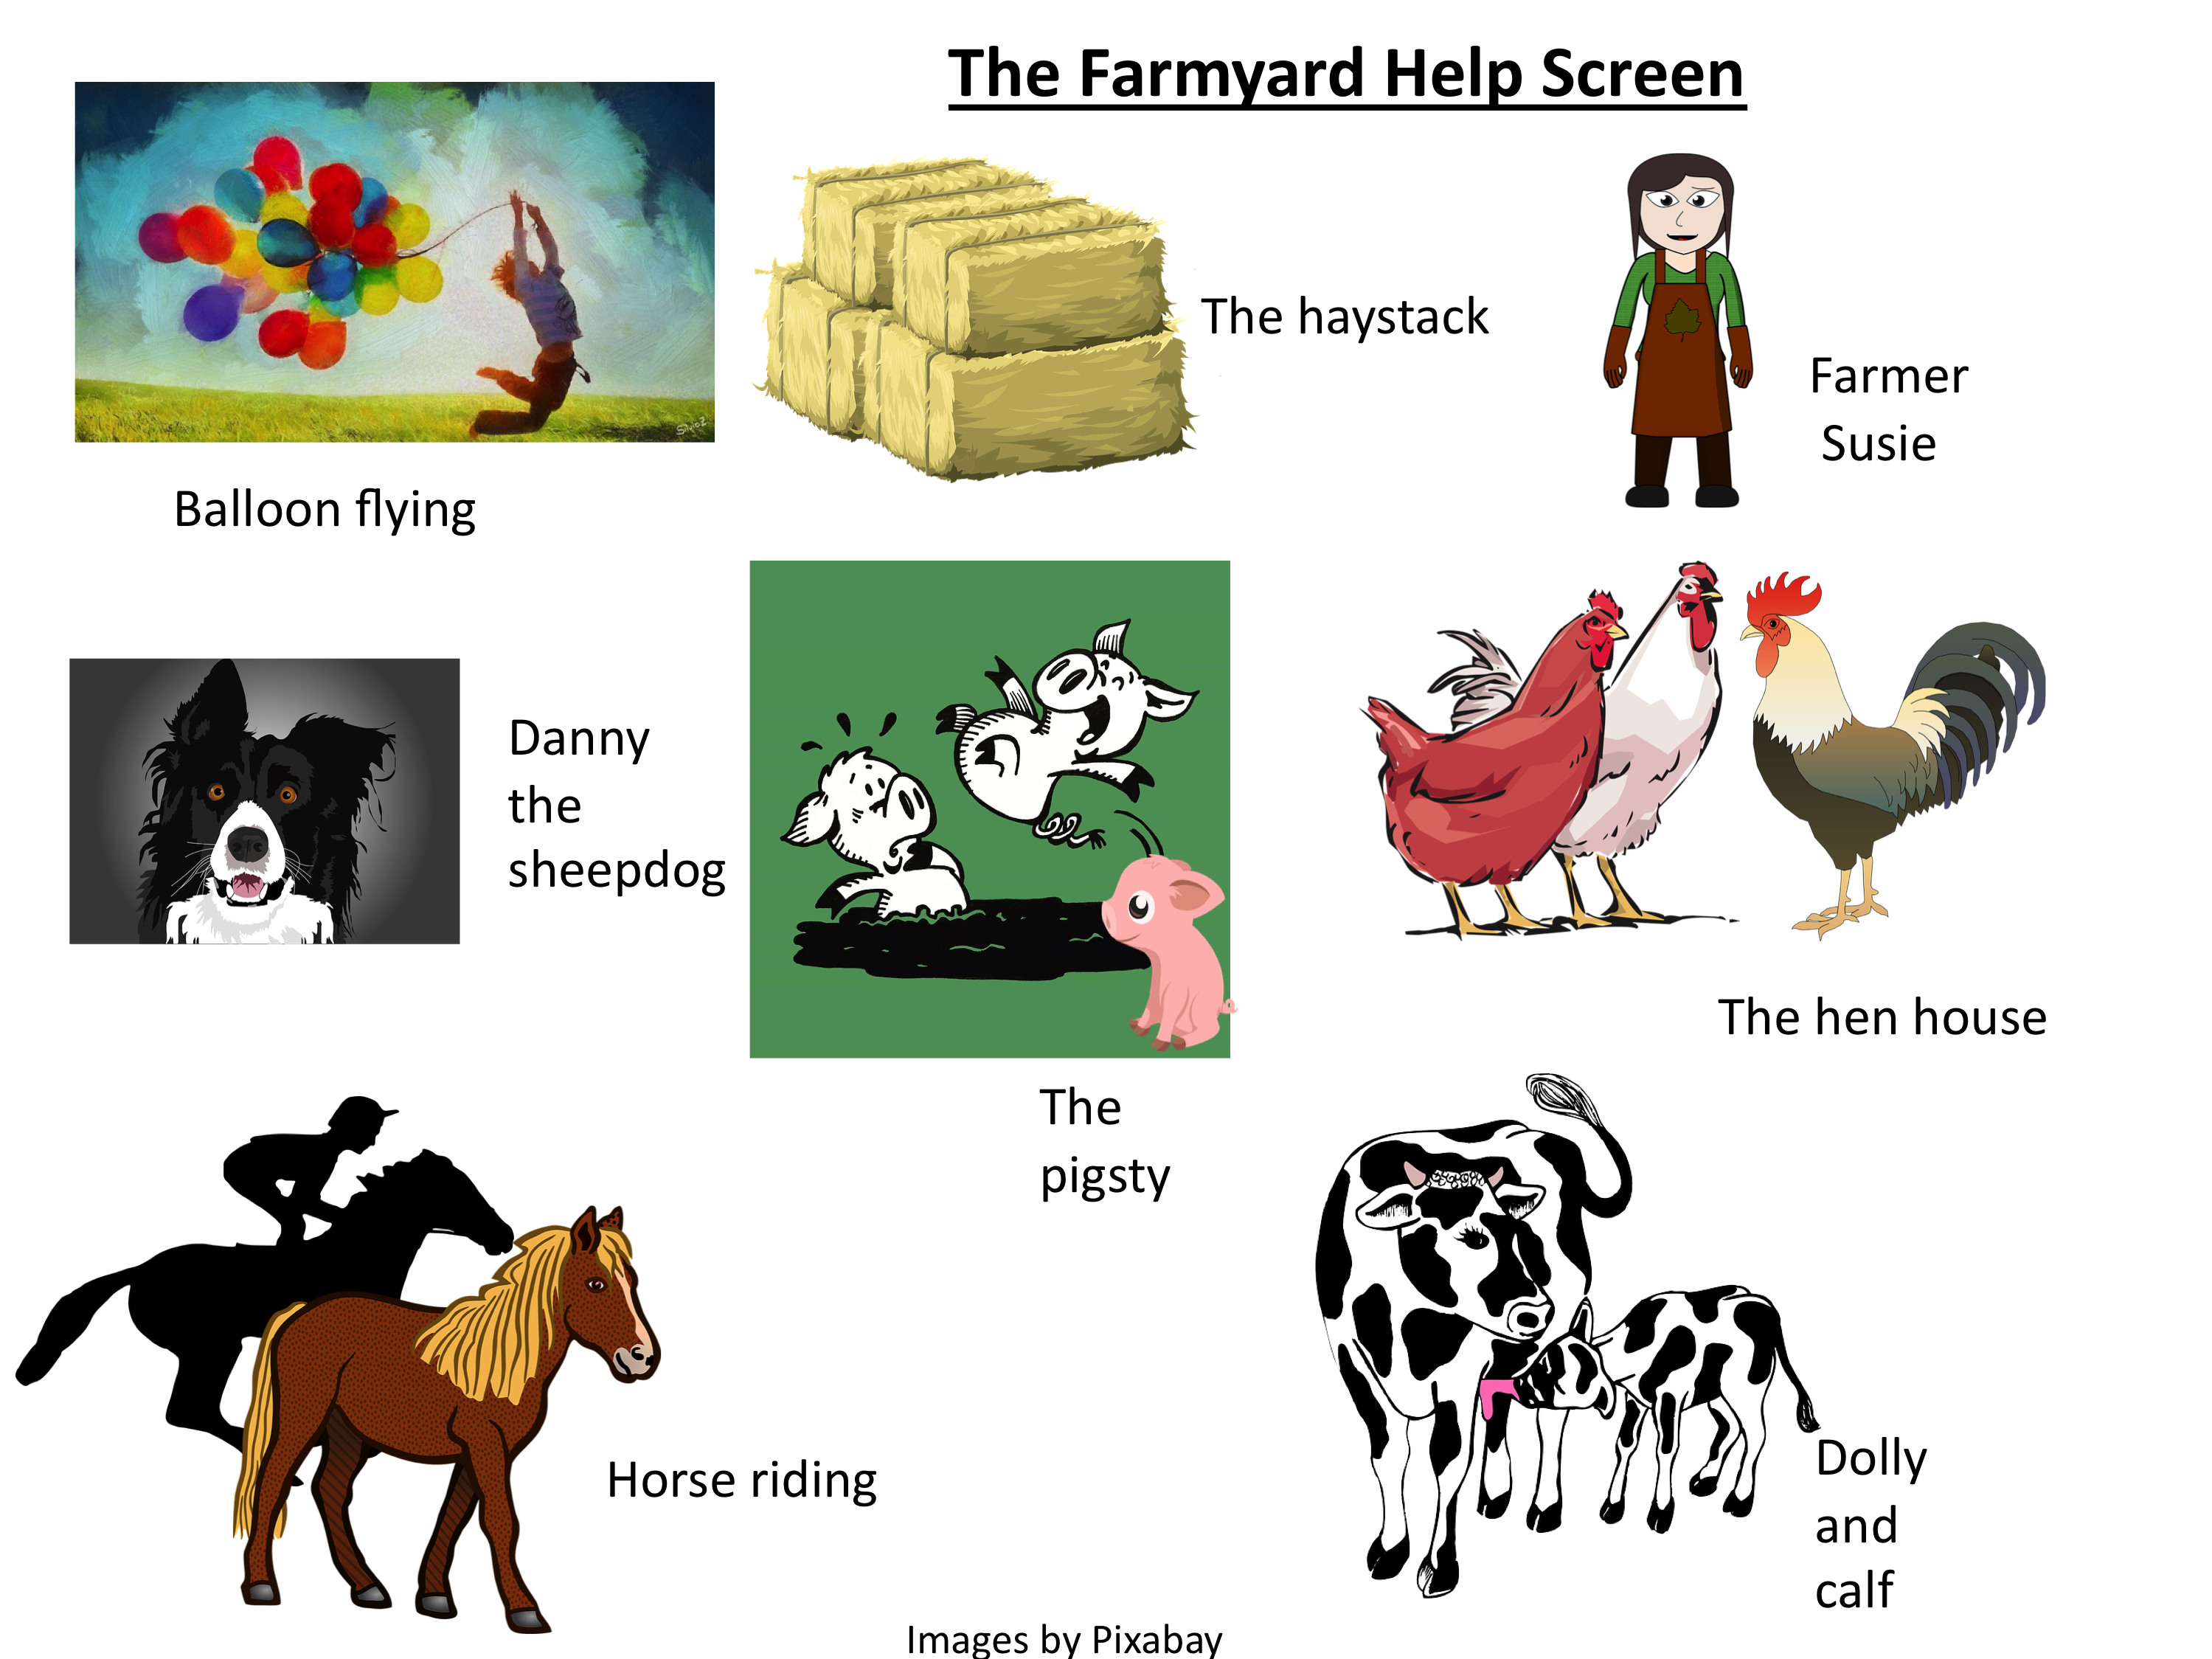 The Farm Yard